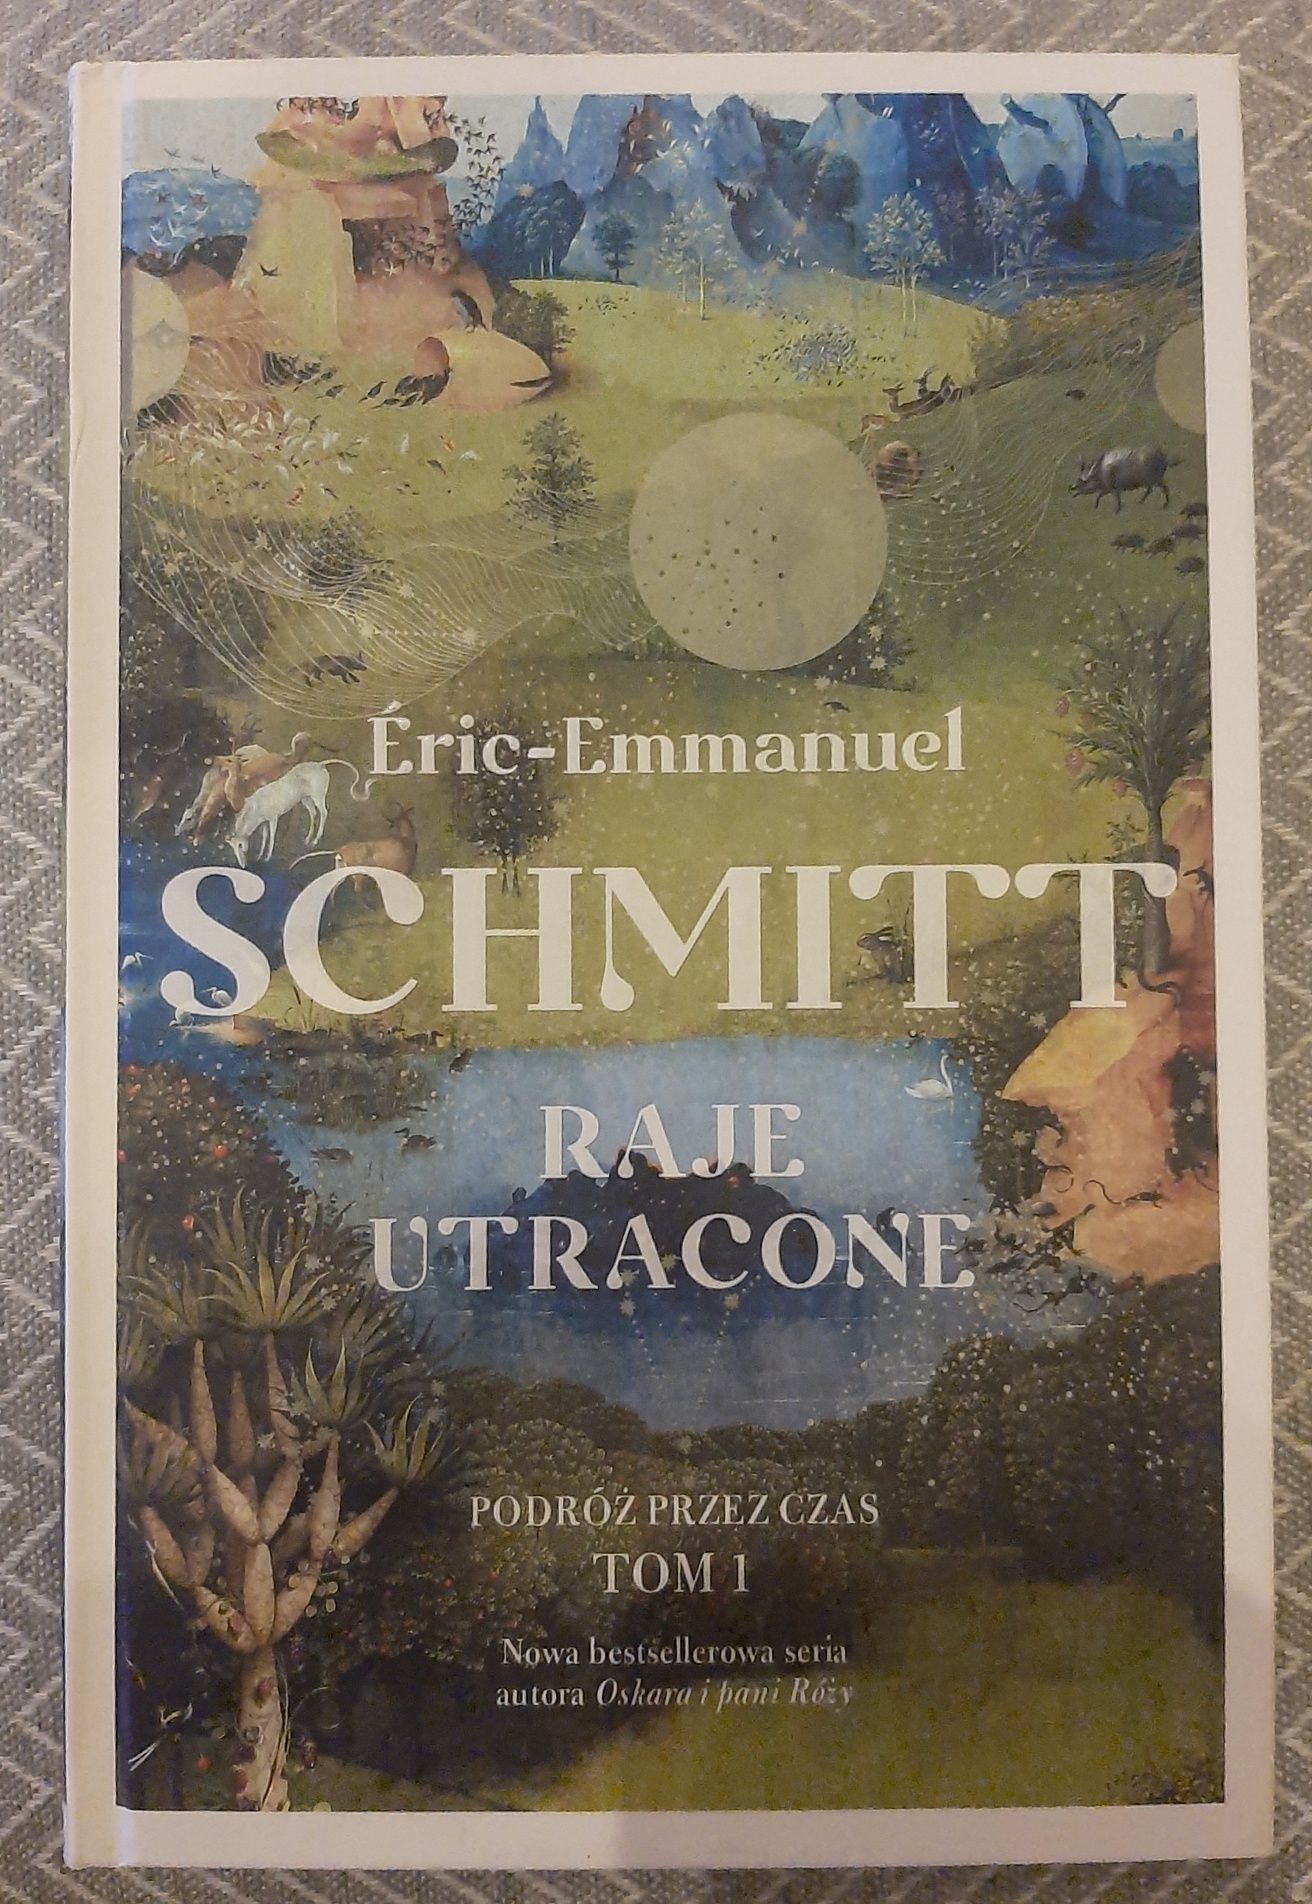 Eric-Emmanuel Schmitt - Raje utracone - tom 1 "Podróż przez czas" 
Tom